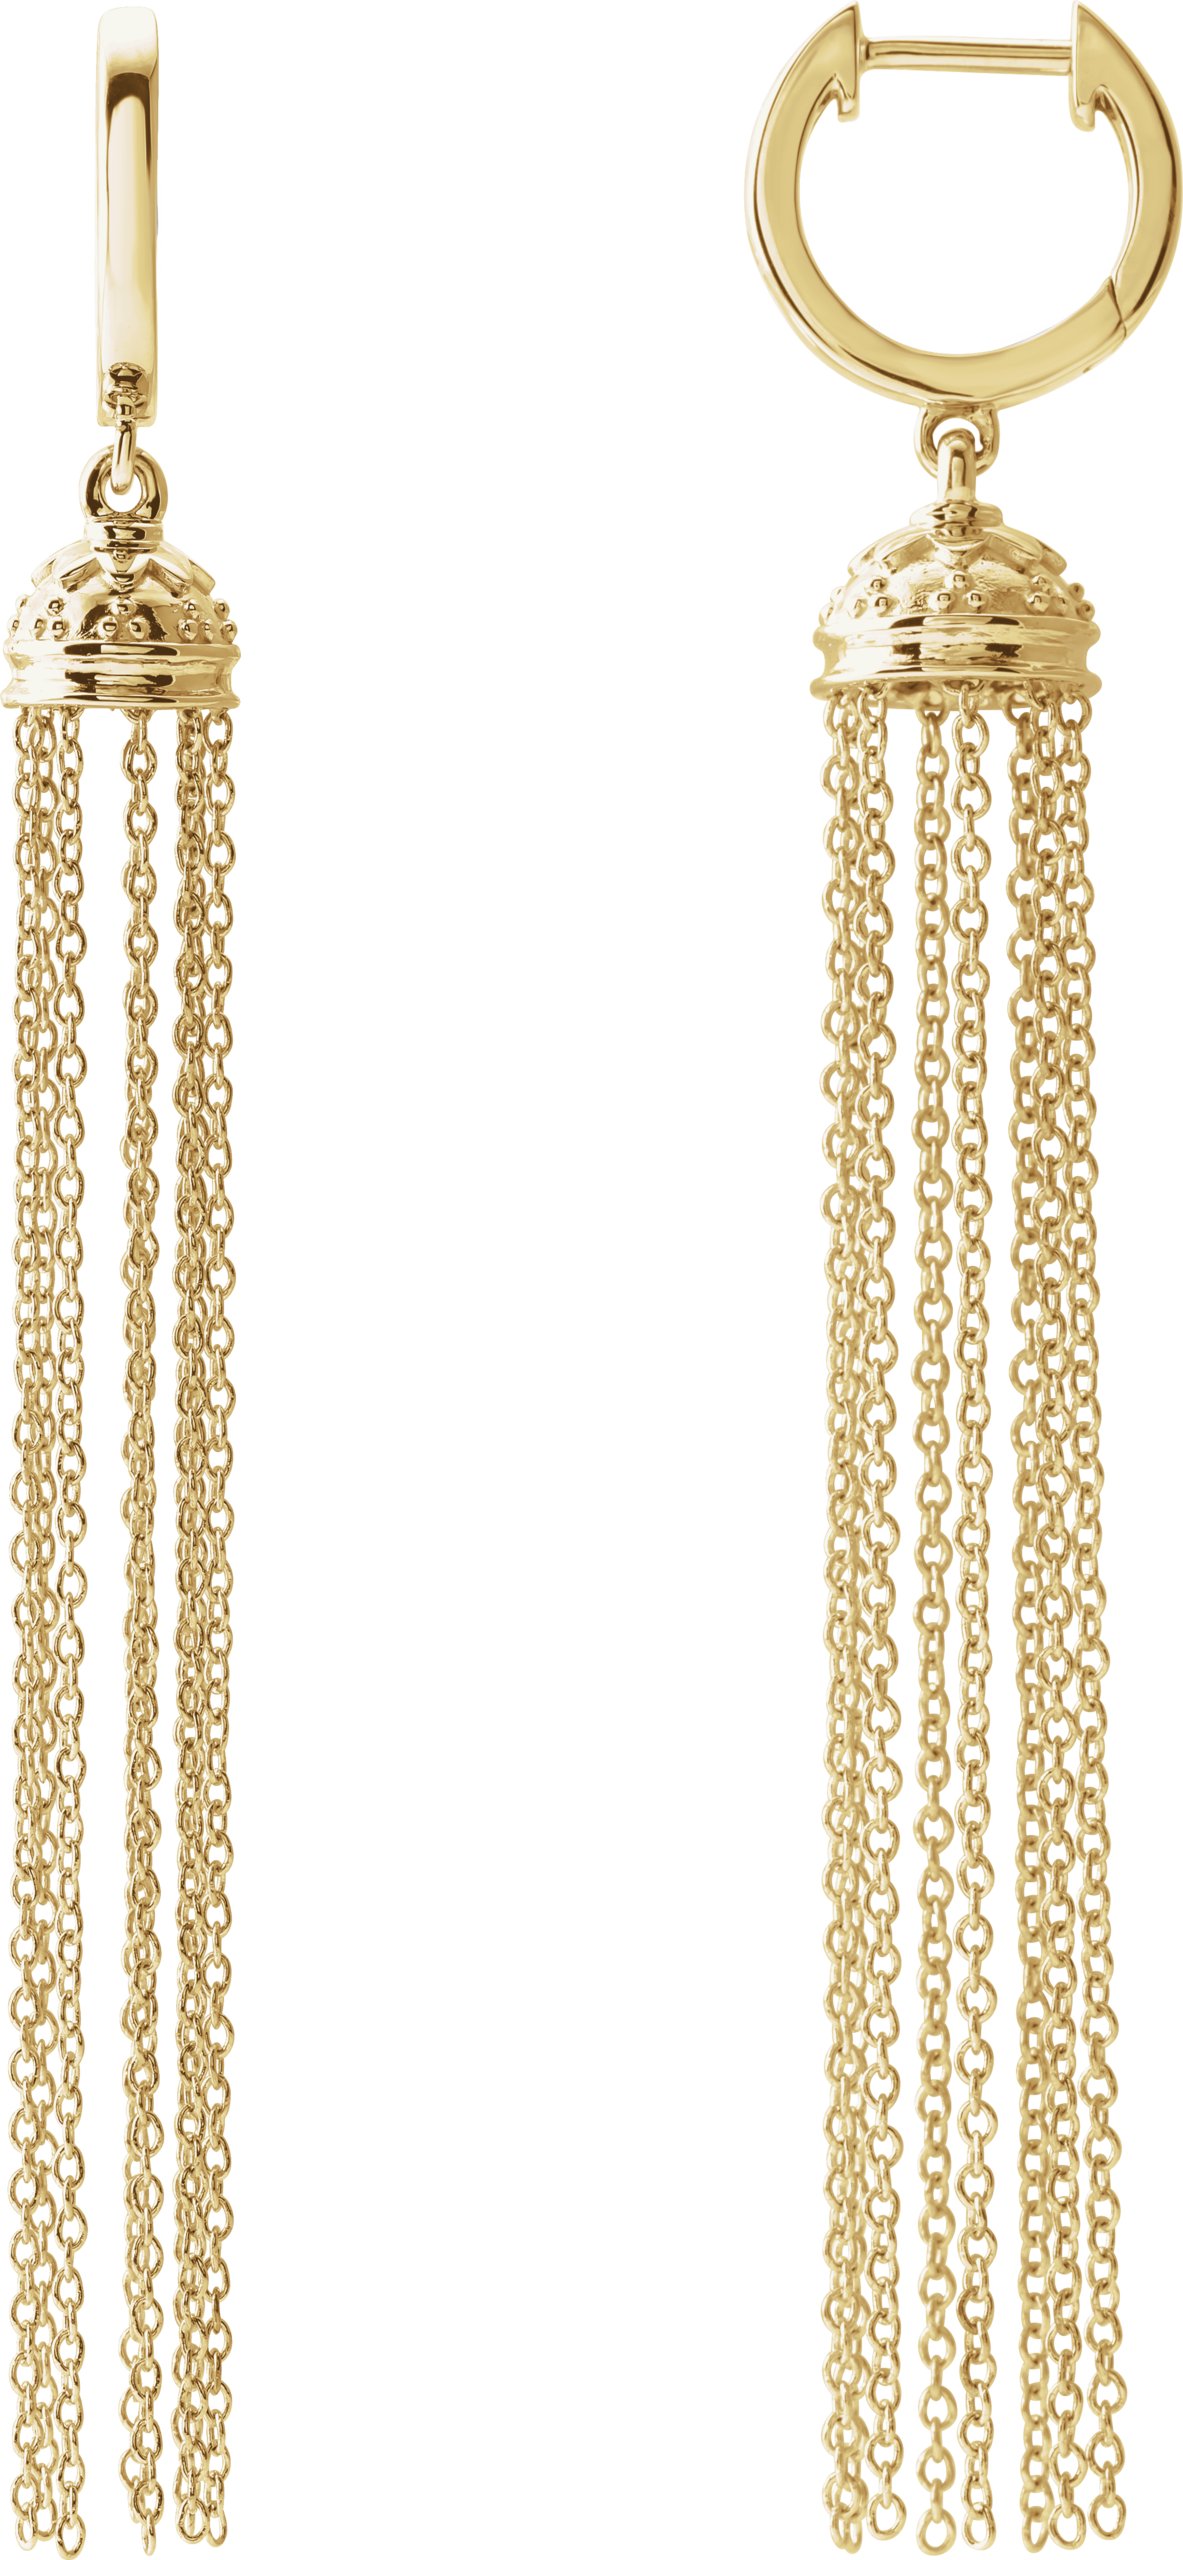 14K Yellow 56 mm Hinged Hoop Chain Earrings